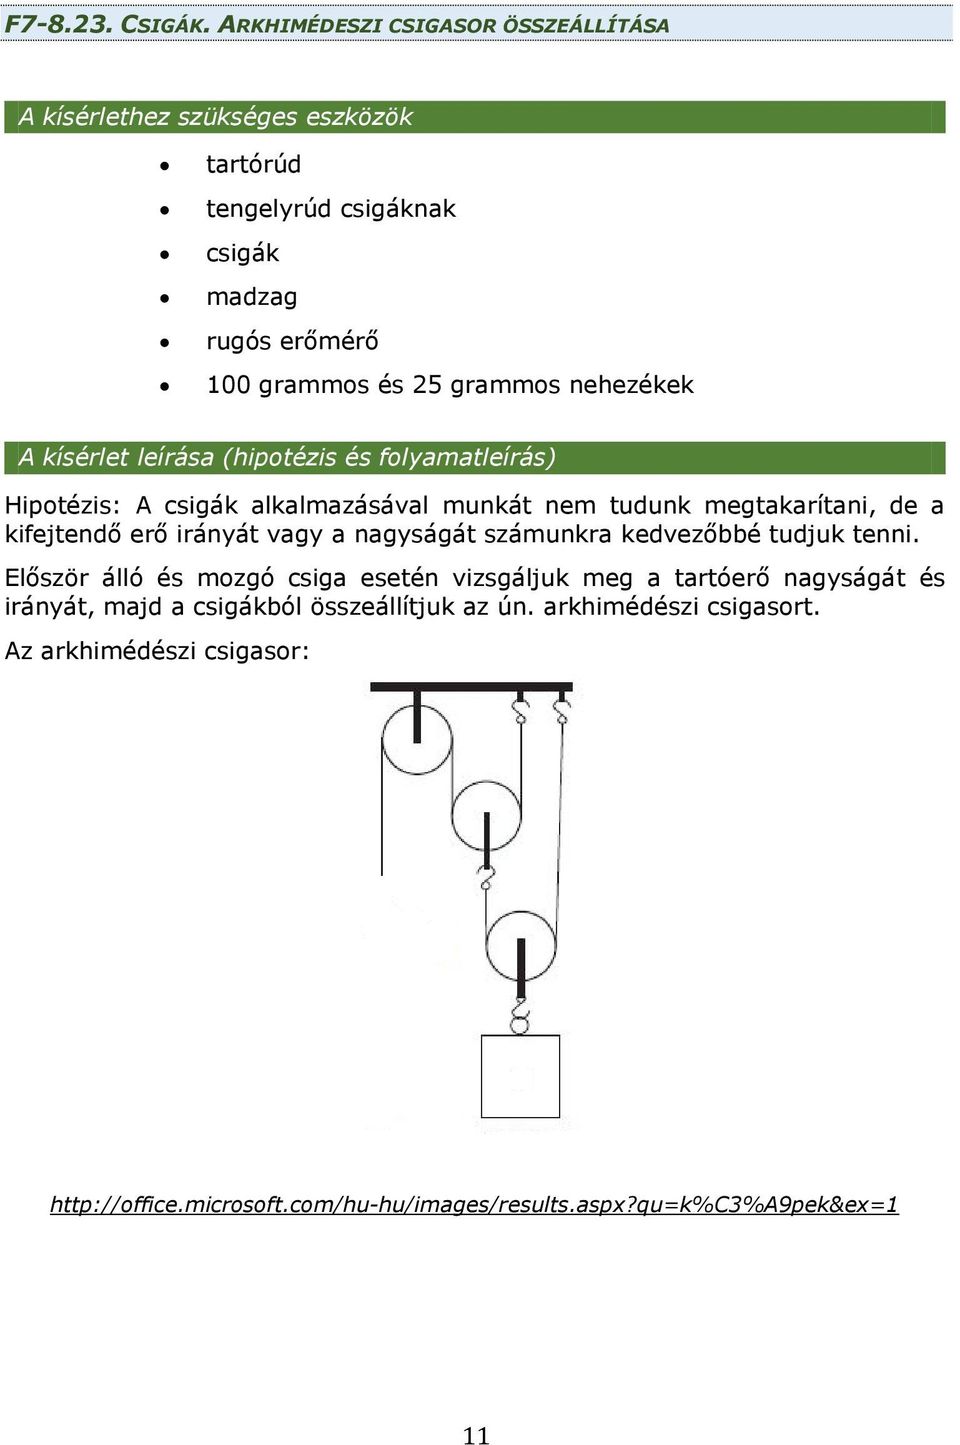 FIZIKA MUNKAFÜZET 7-8. ÉVFOLYAM II.KÖTET - PDF Free Download